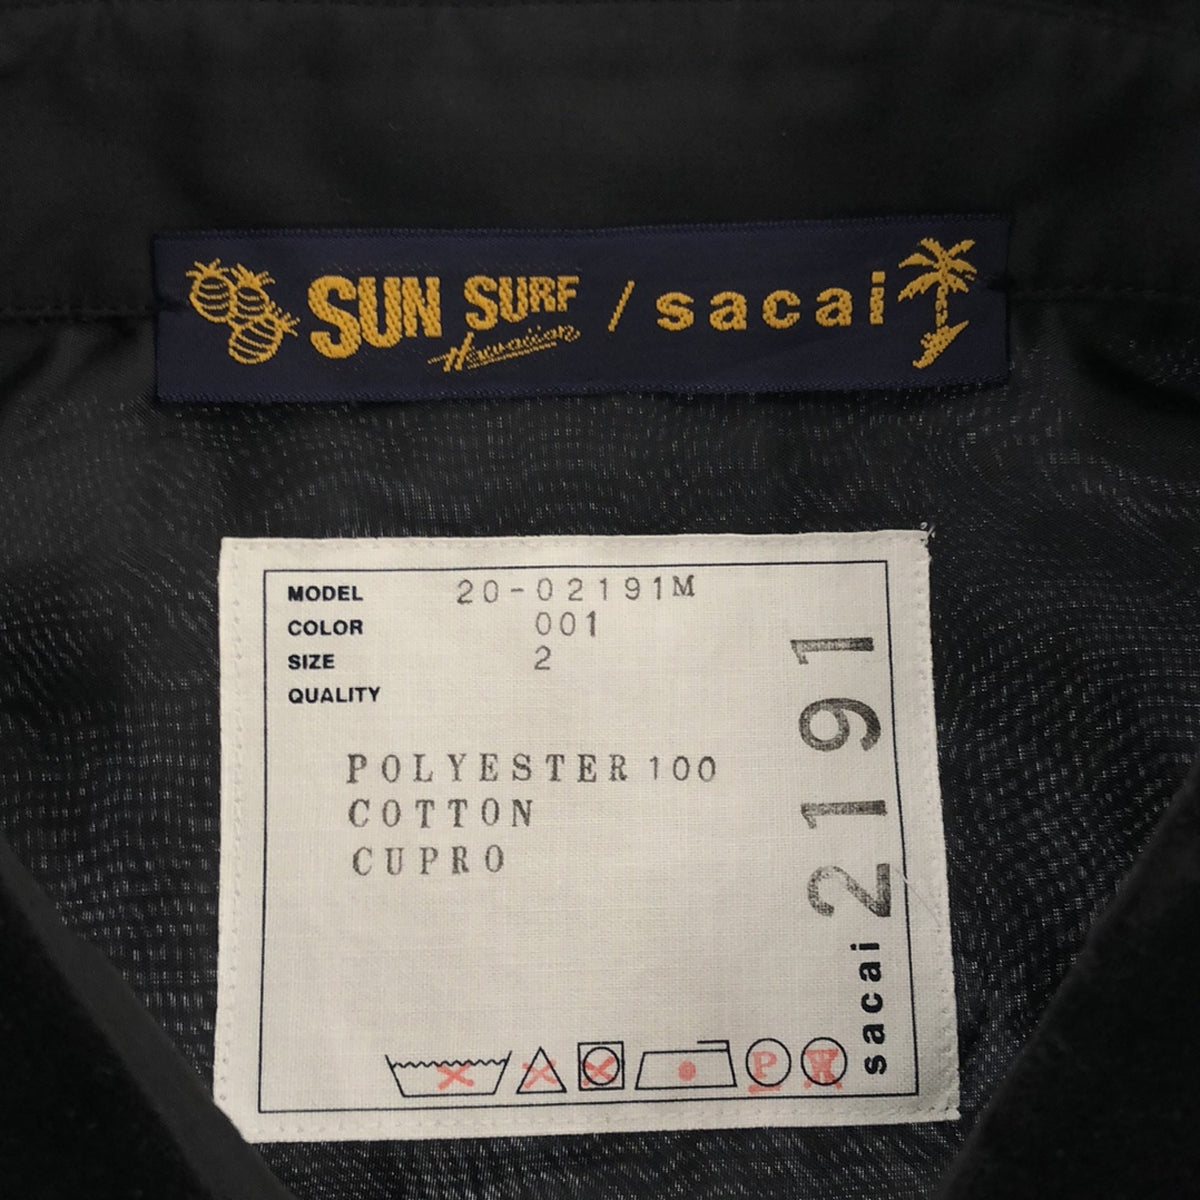 sacai / サカイ | 2020SS | × SUN SURF パームツリー アロハプリント シャツ | 2 | メンズ